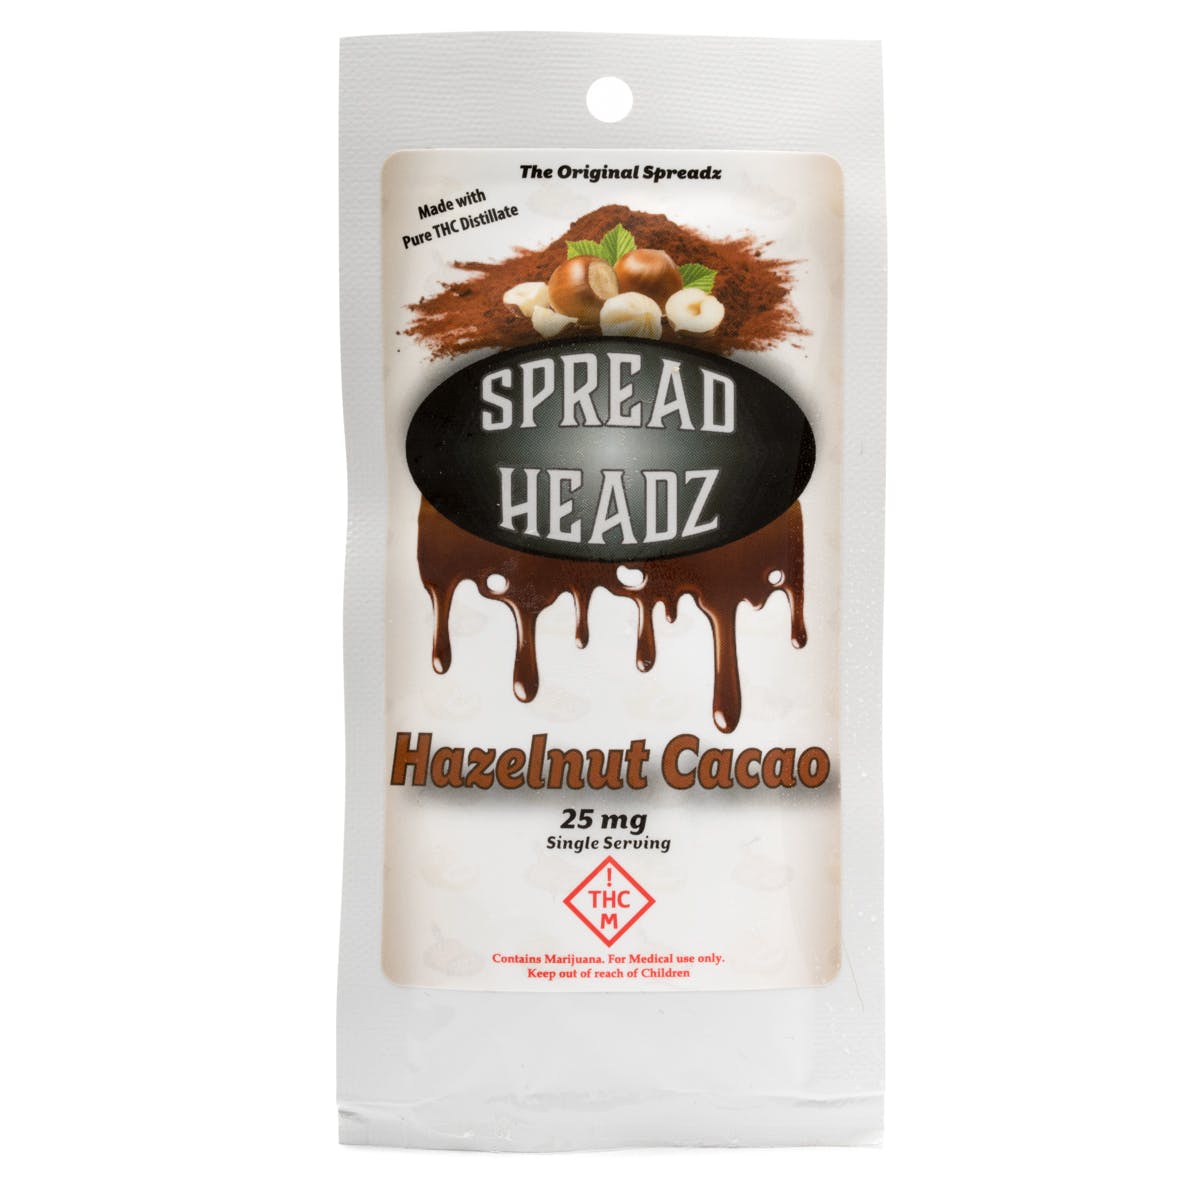 Single Hazelnut Cocoa Spread Headz 25mg - MED